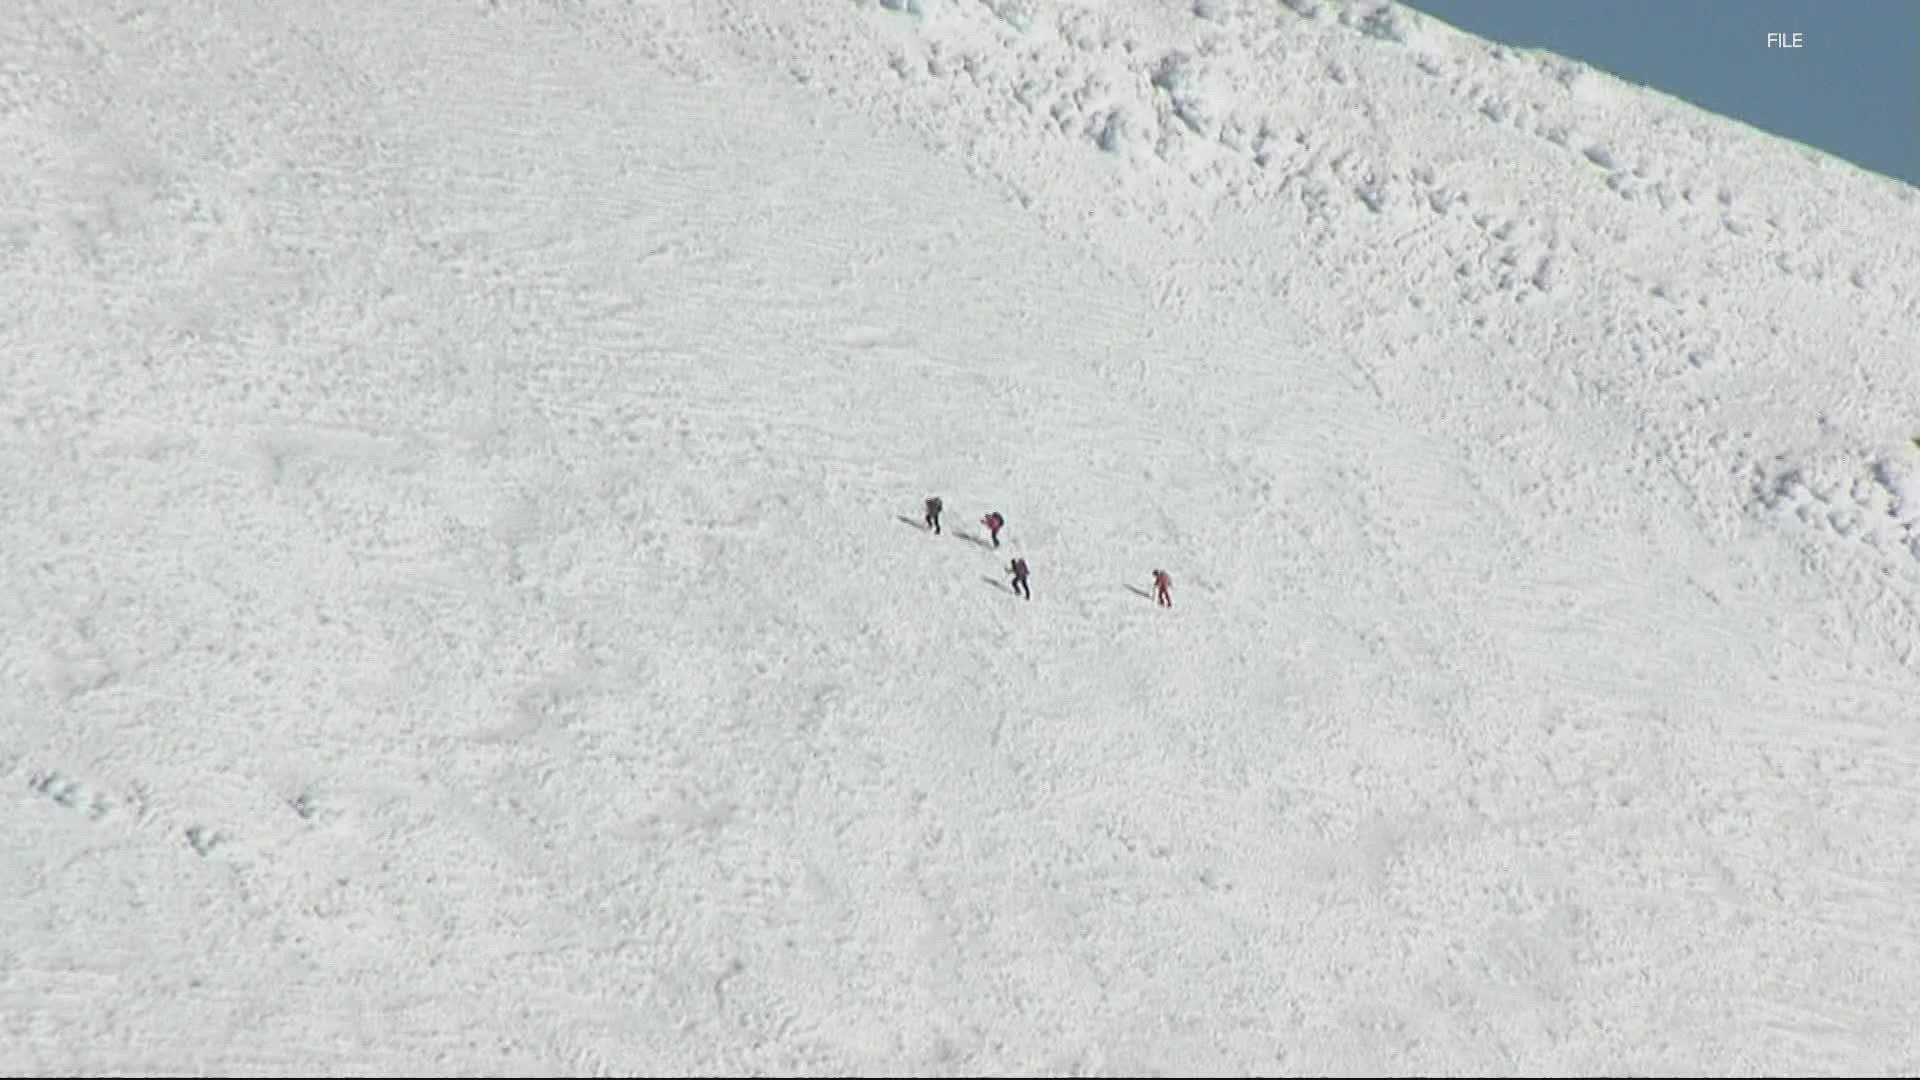 Climber slides 1,000 feet down Mount Hood